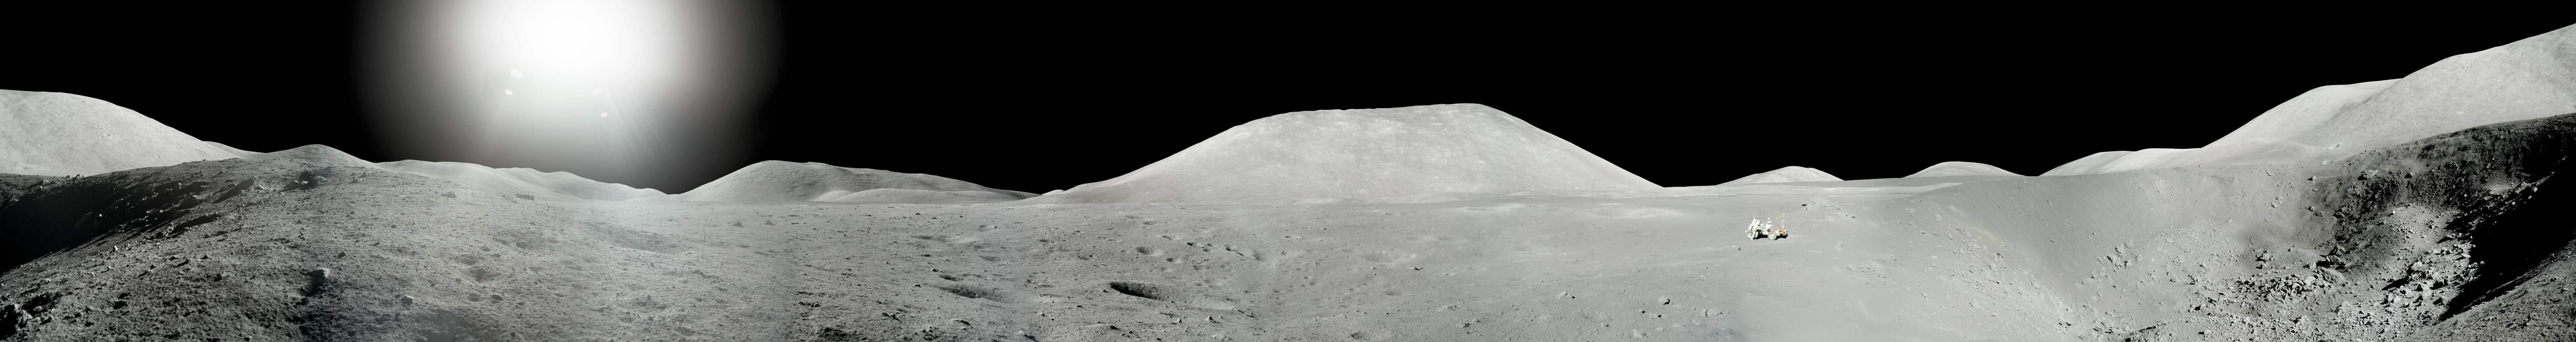 Жнец дрейфующей луны 79 вк. Аполлон 17 панорама. Панорамные снимки Луны Аполлон. Пик Агнесс гора на Луне. Издание которое опубликовали панорамные изображения Луны.